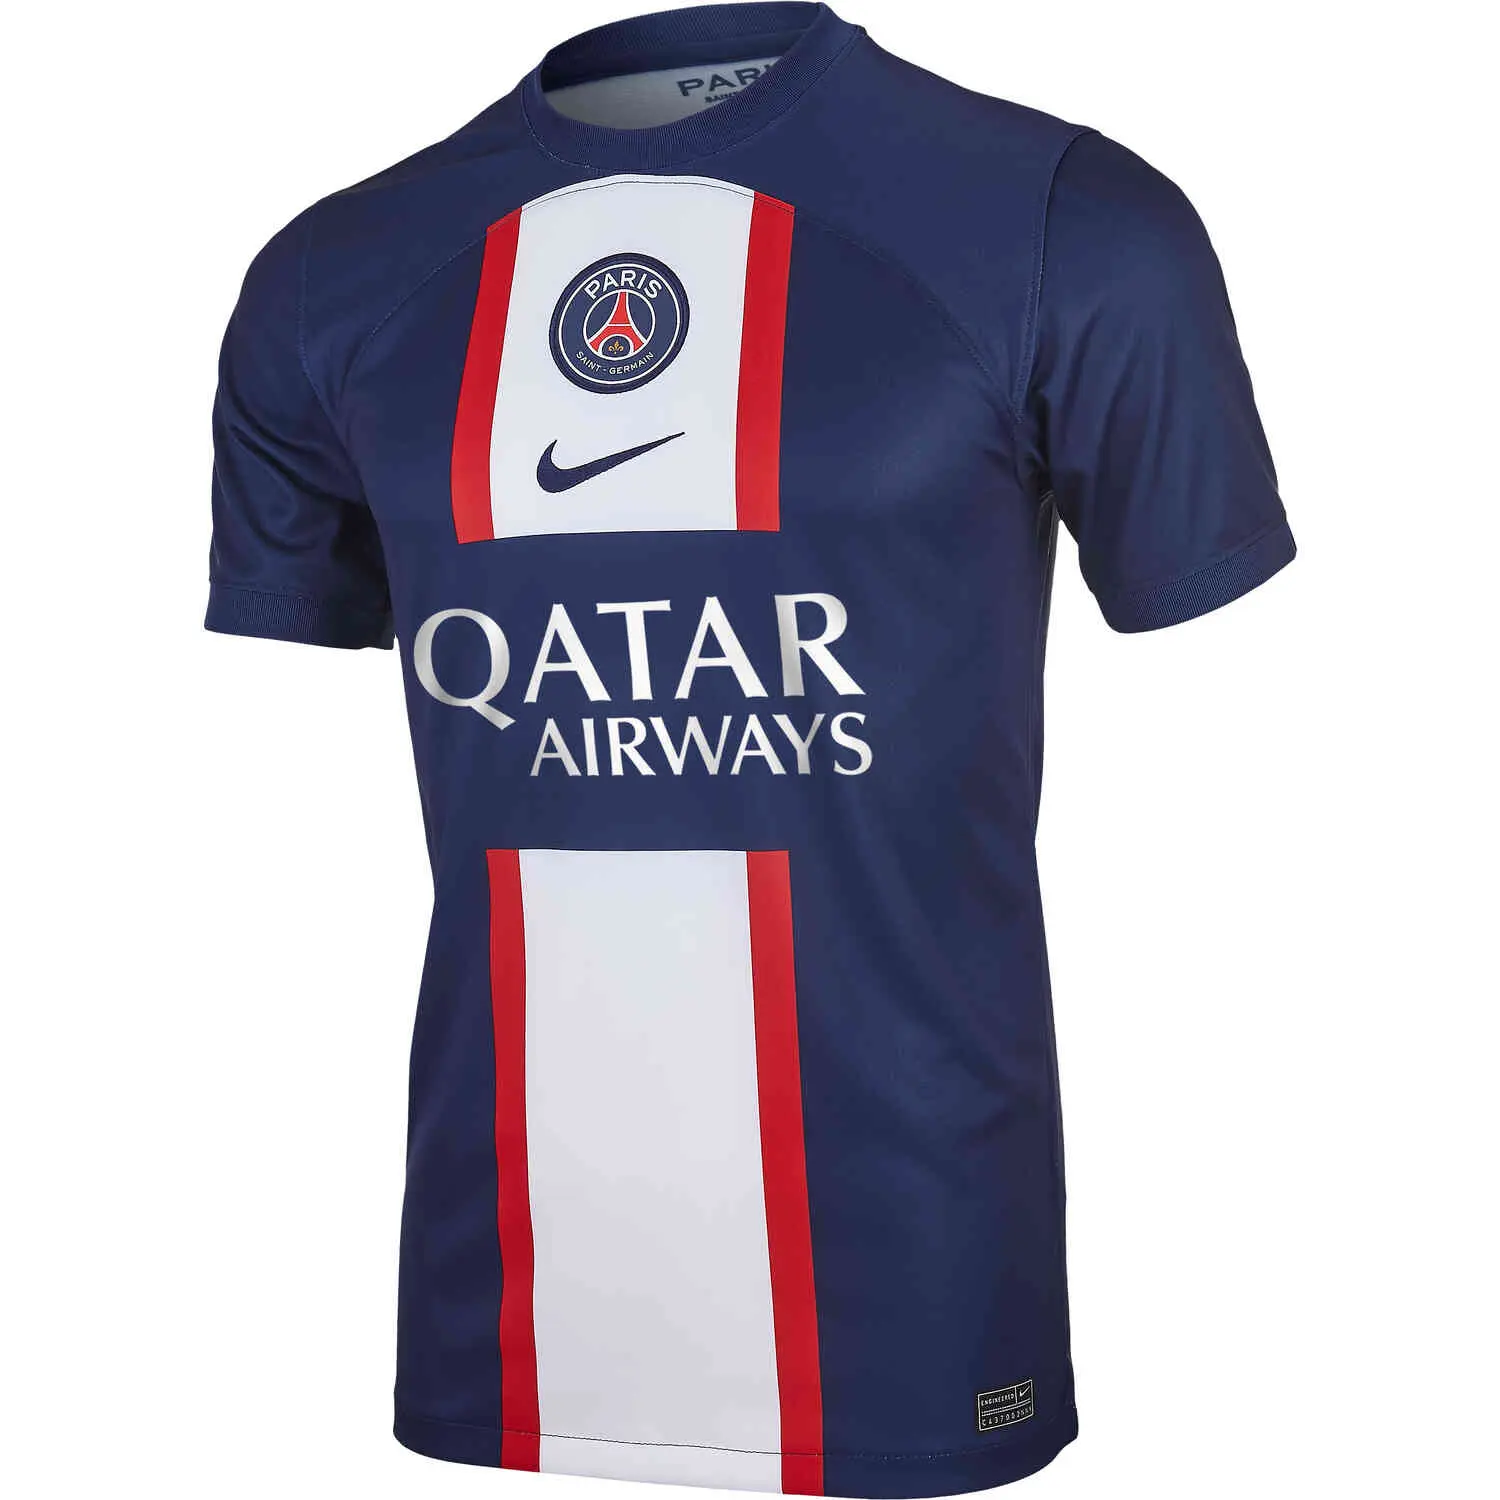 camisa psg nike - Cuál es la marca de la camiseta del PSG